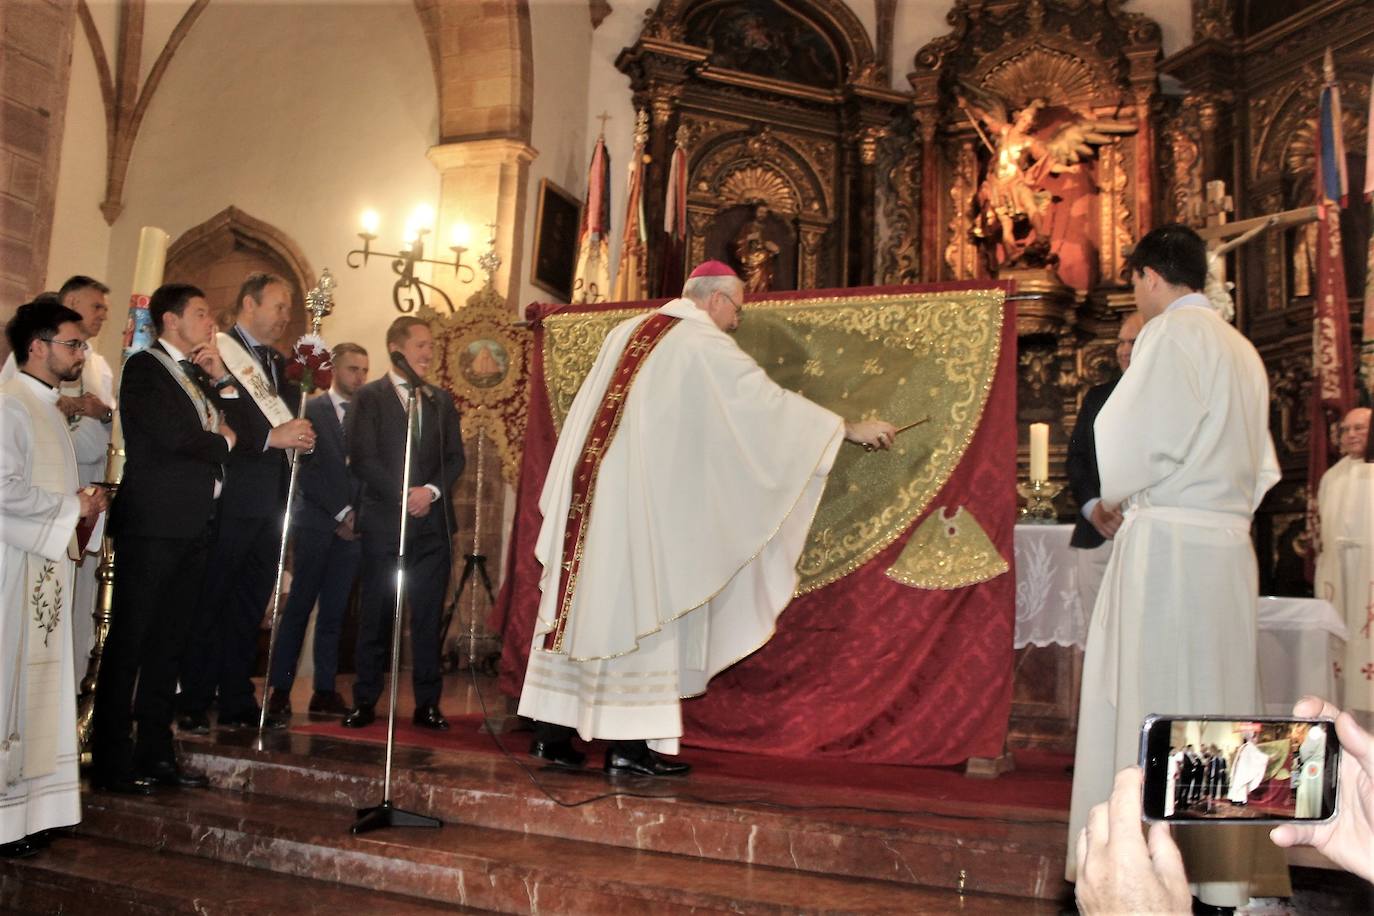 Presentado y bendecido el manto que llevará la Virgen de la Cabeza en la procesión del domingo 30 de abril 